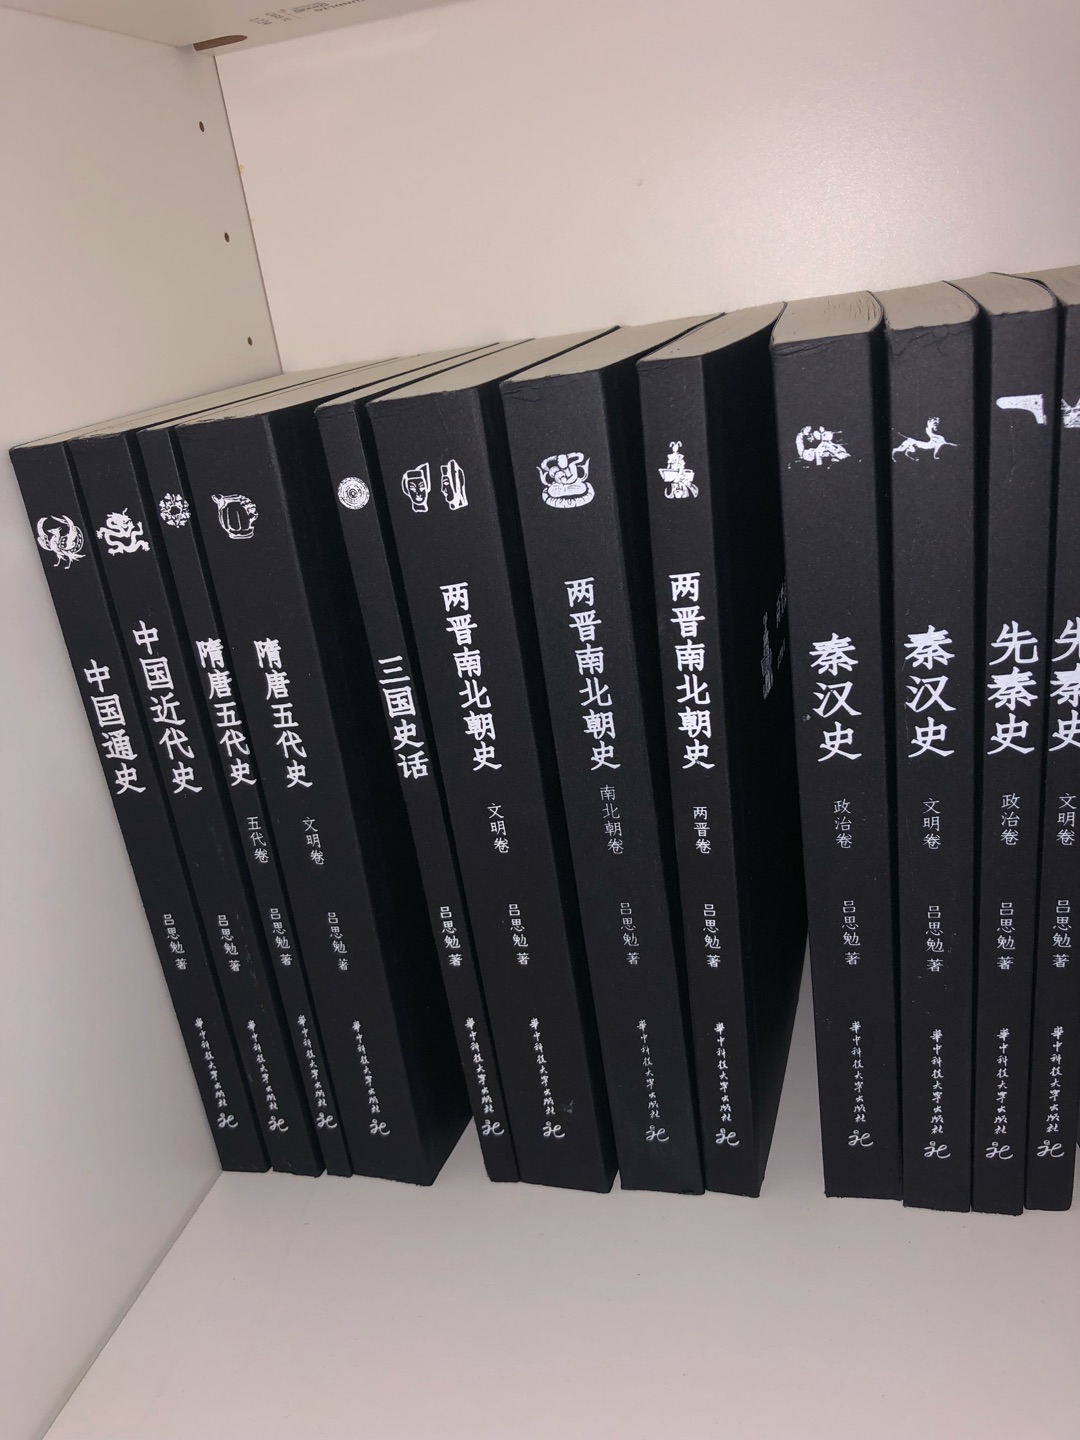 大师的作品，白话中国史，通俗易懂，非常好的一套丛书。